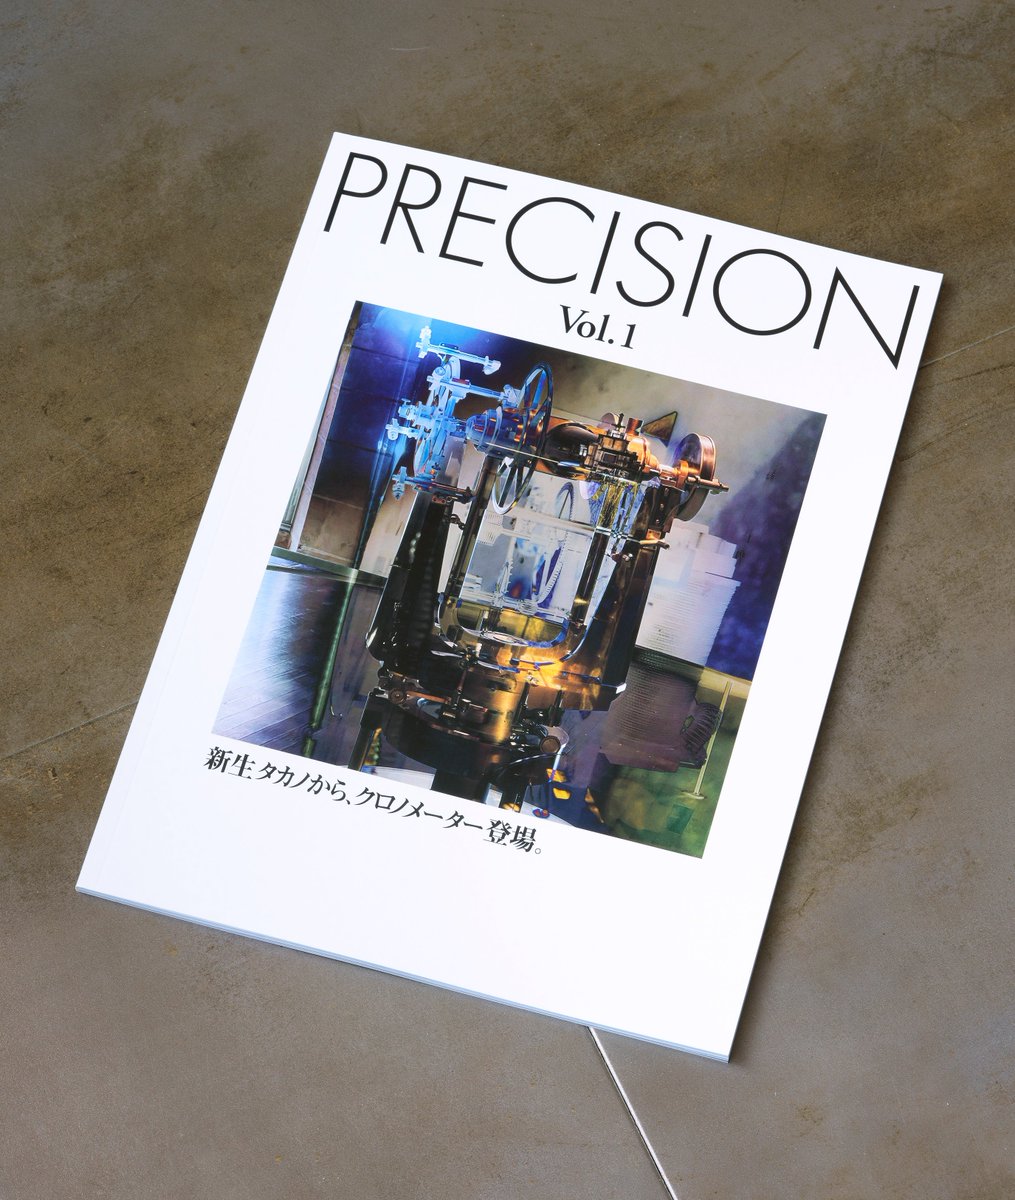 タカノ発表イベントの際に、お土産に入れる冊子が出来上がってきた。
作りとしては、いわゆる企業PR誌のようなもので、それの「タカノ特集」といった趣になっている。